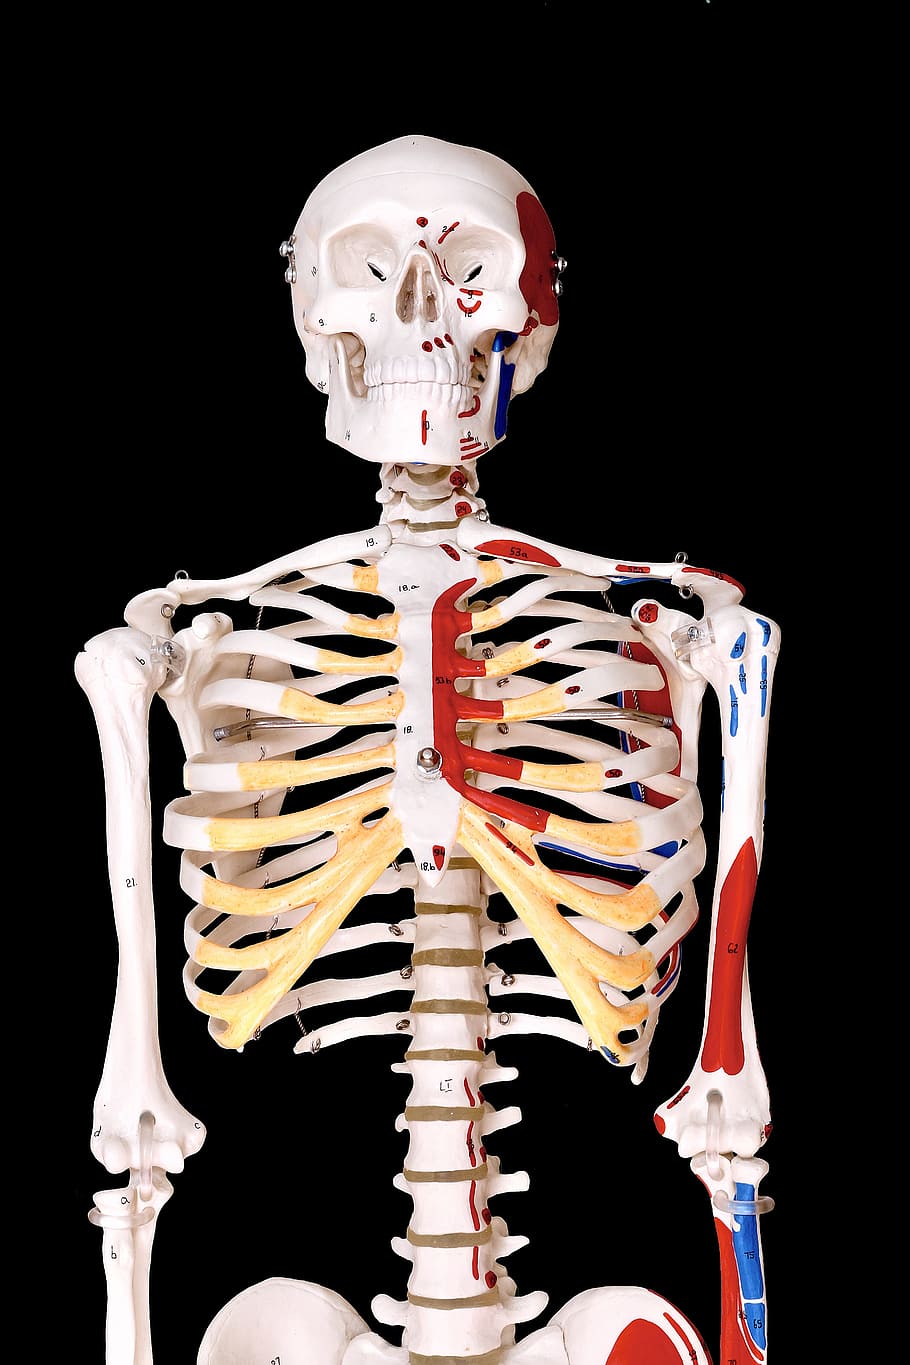 スケルトン, 人間, モデル, 物理学, 解剖学, 骨, 人間の骨格, 人間の骨, 黒背景, 人体の一部